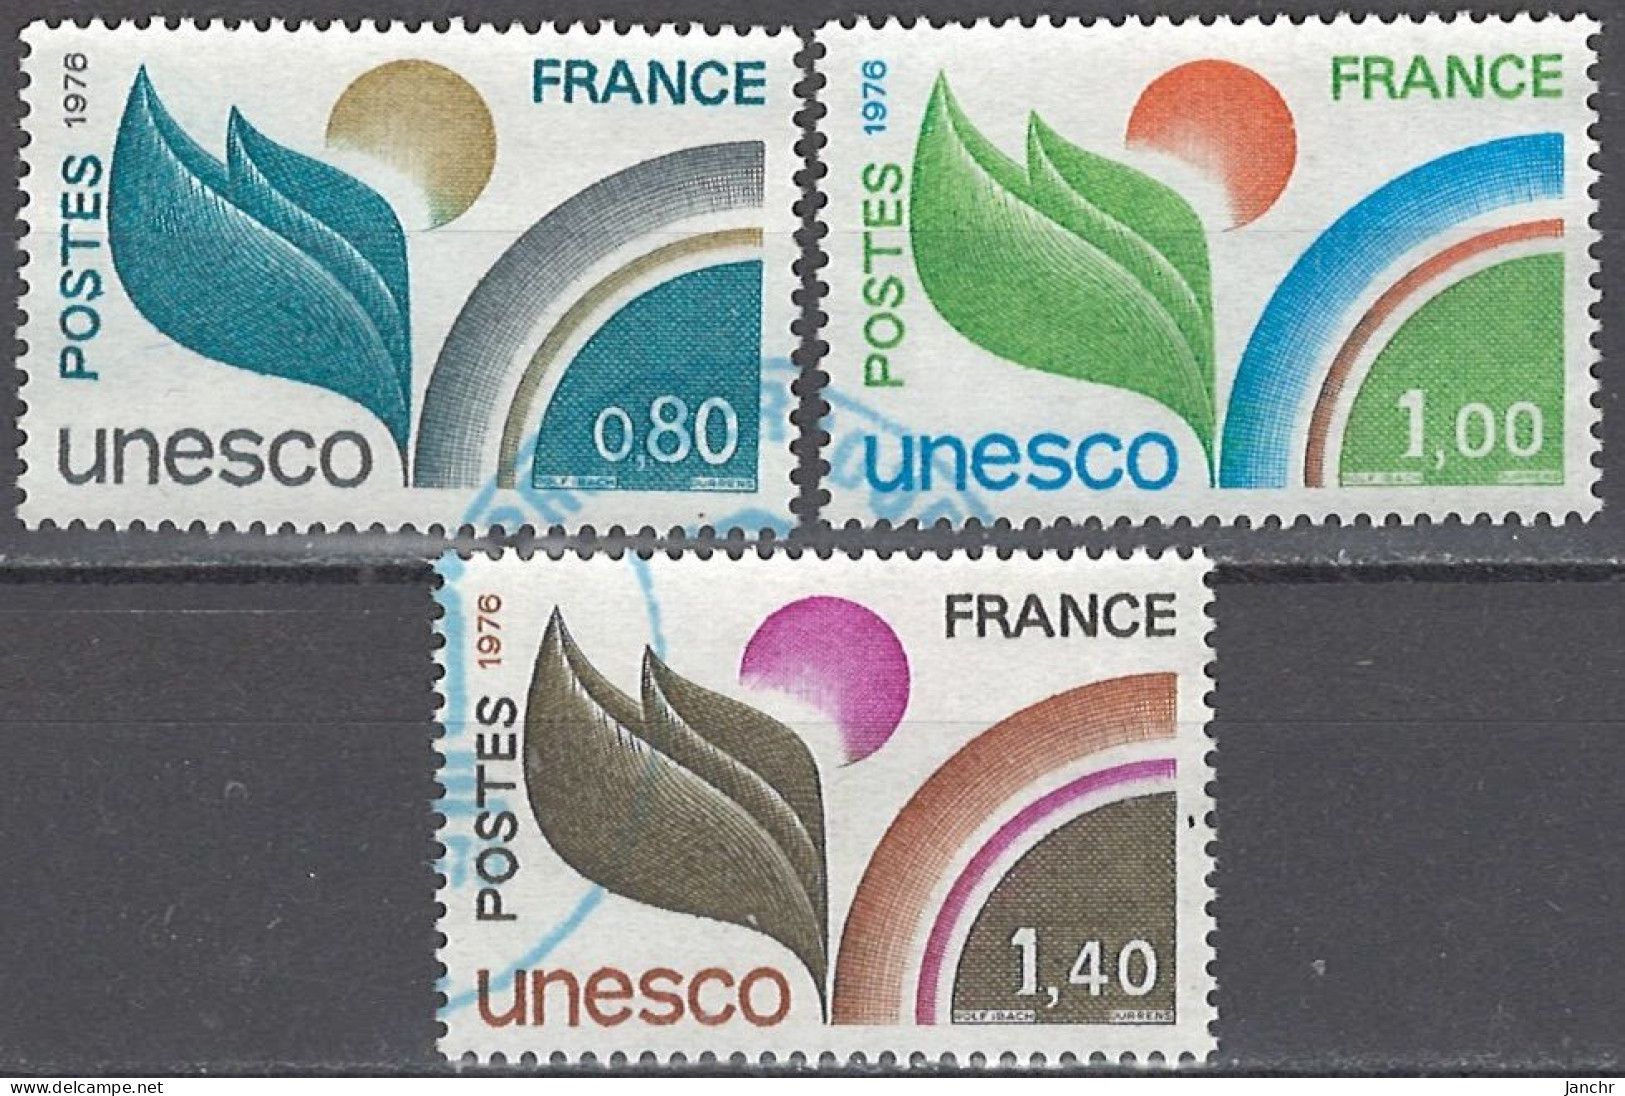 France Frankreich 1976. UNESCO. Mi.Nr. 16-18, Used O - Gebraucht